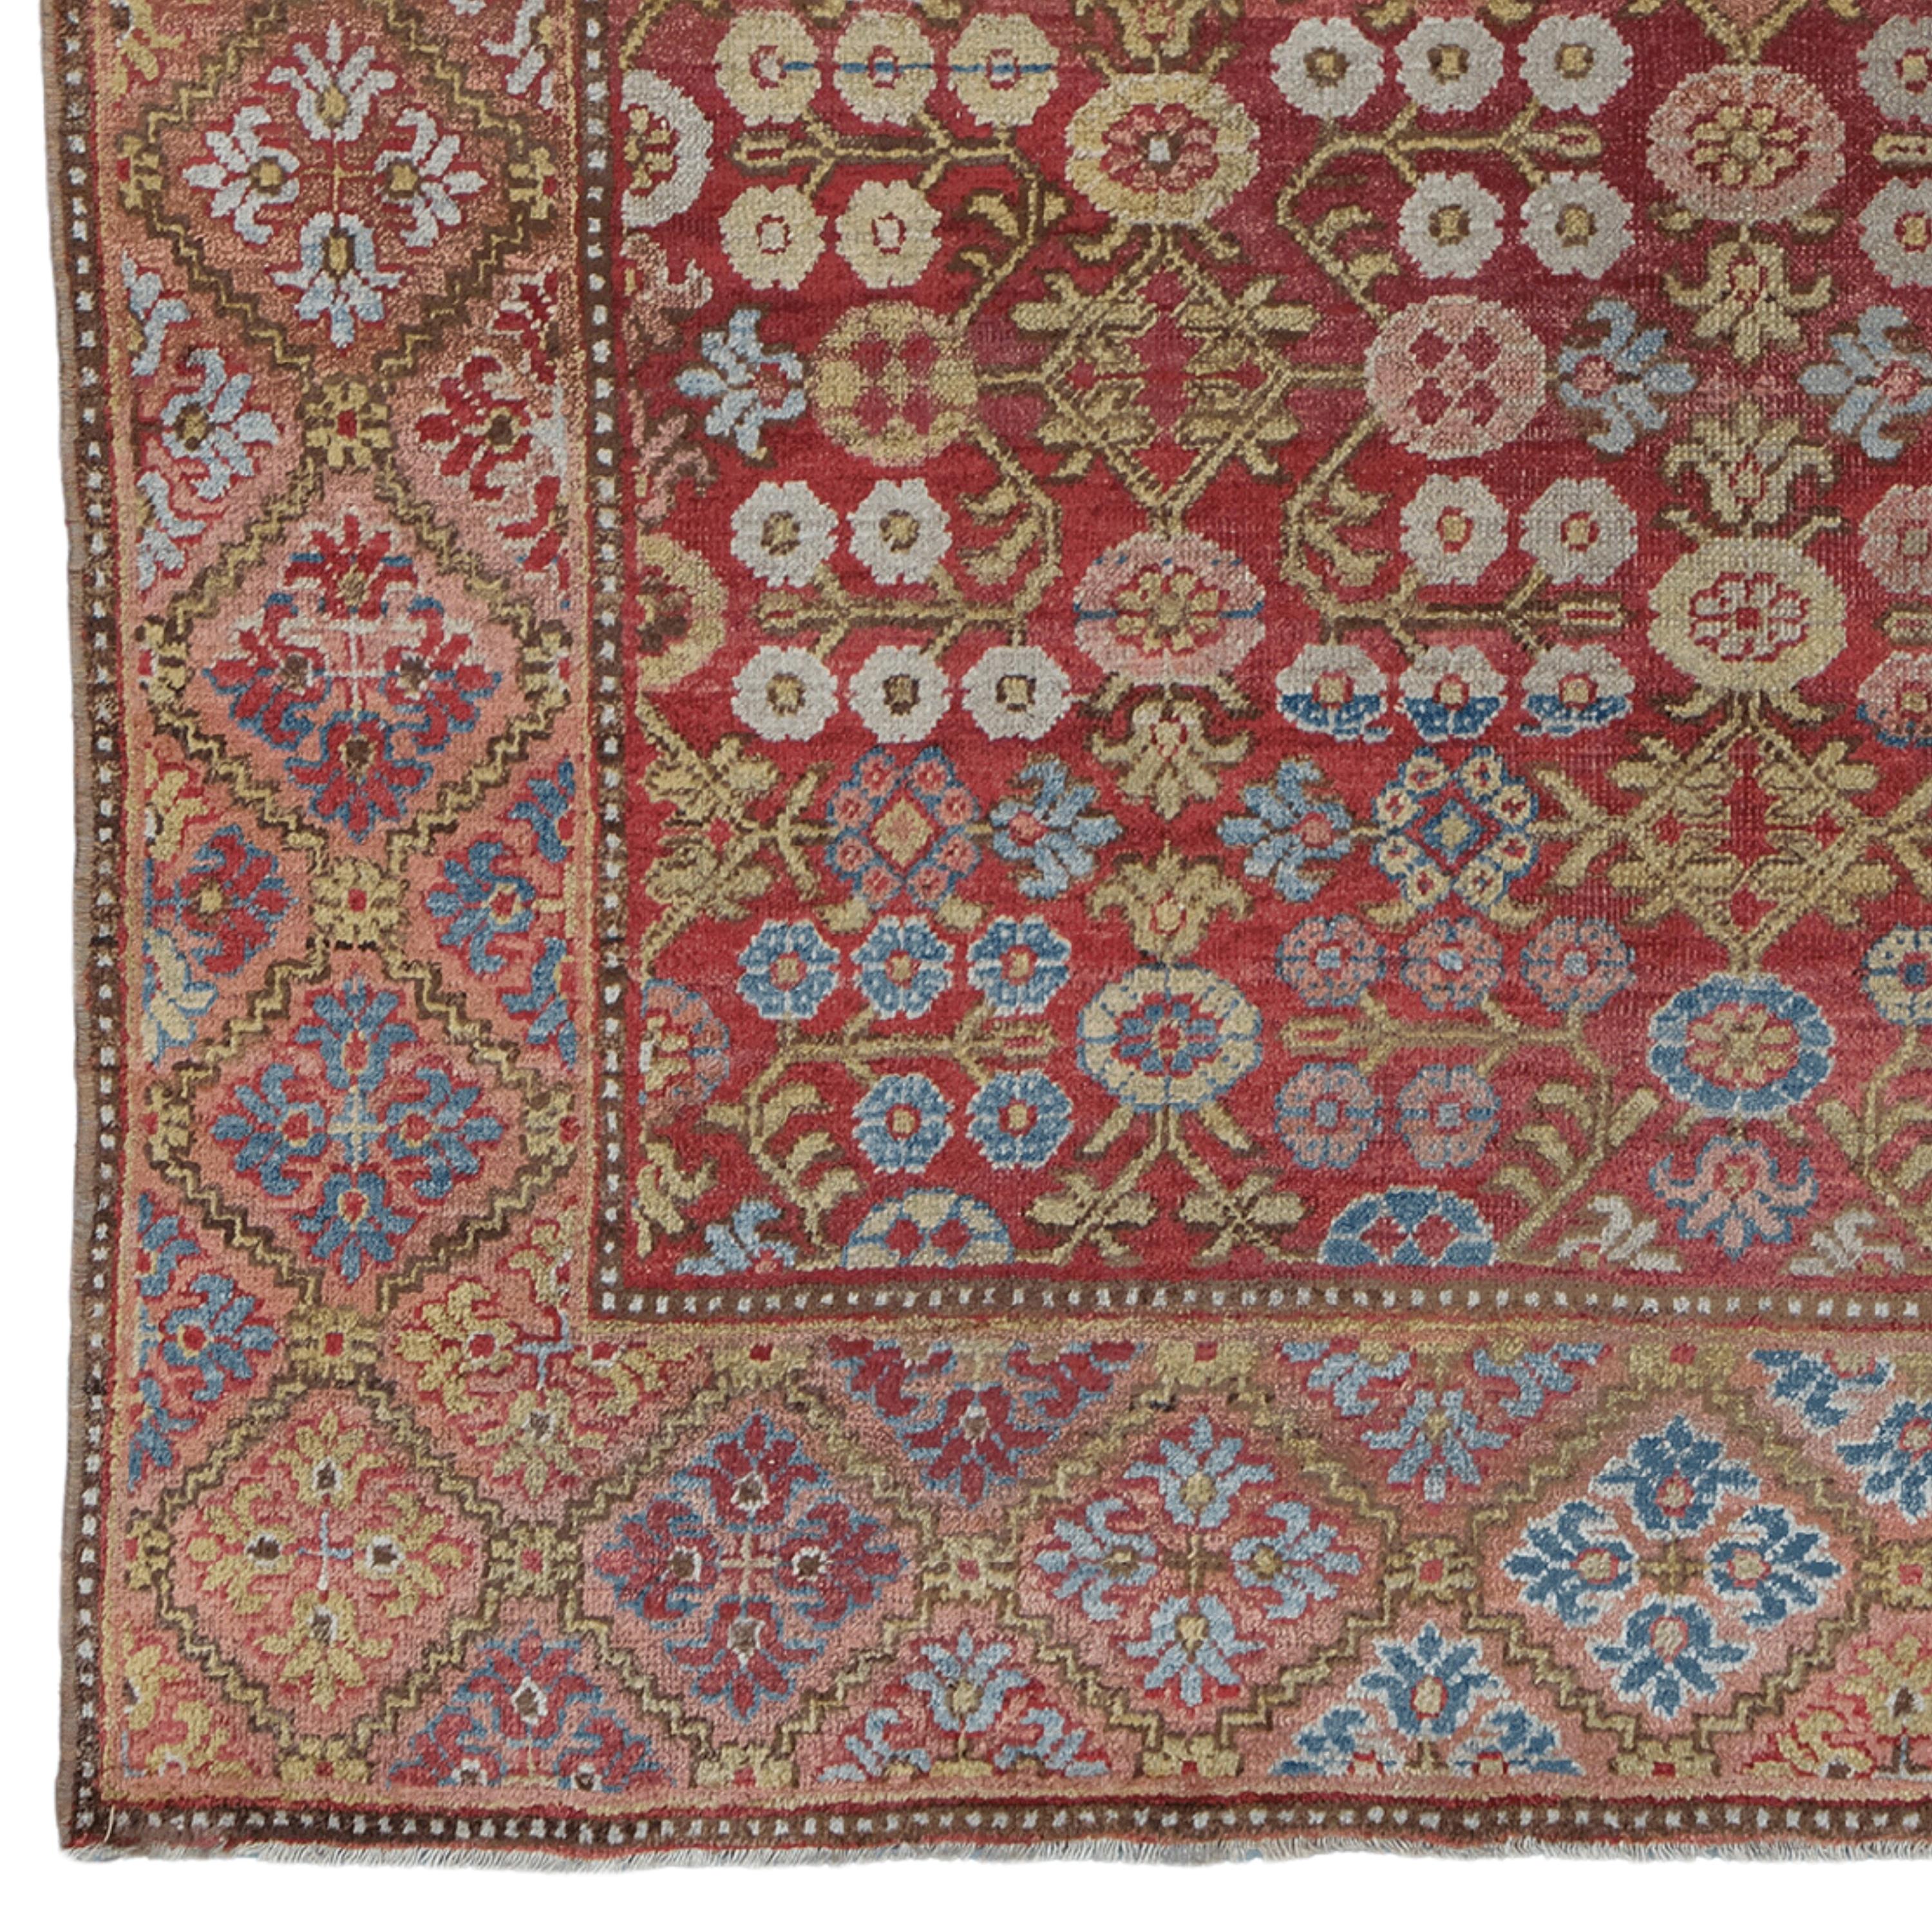 Dieser exquisite antike Khotan-Teppich ist ein Kunstwerk aus dem späten 19. Jahrhundert. Dieses Stück, das mit seiner reichen Farbpalette und seinen komplexen Mustern die Aufmerksamkeit auf sich zieht, bereichert die Atmosphäre eines jeden Raumes.